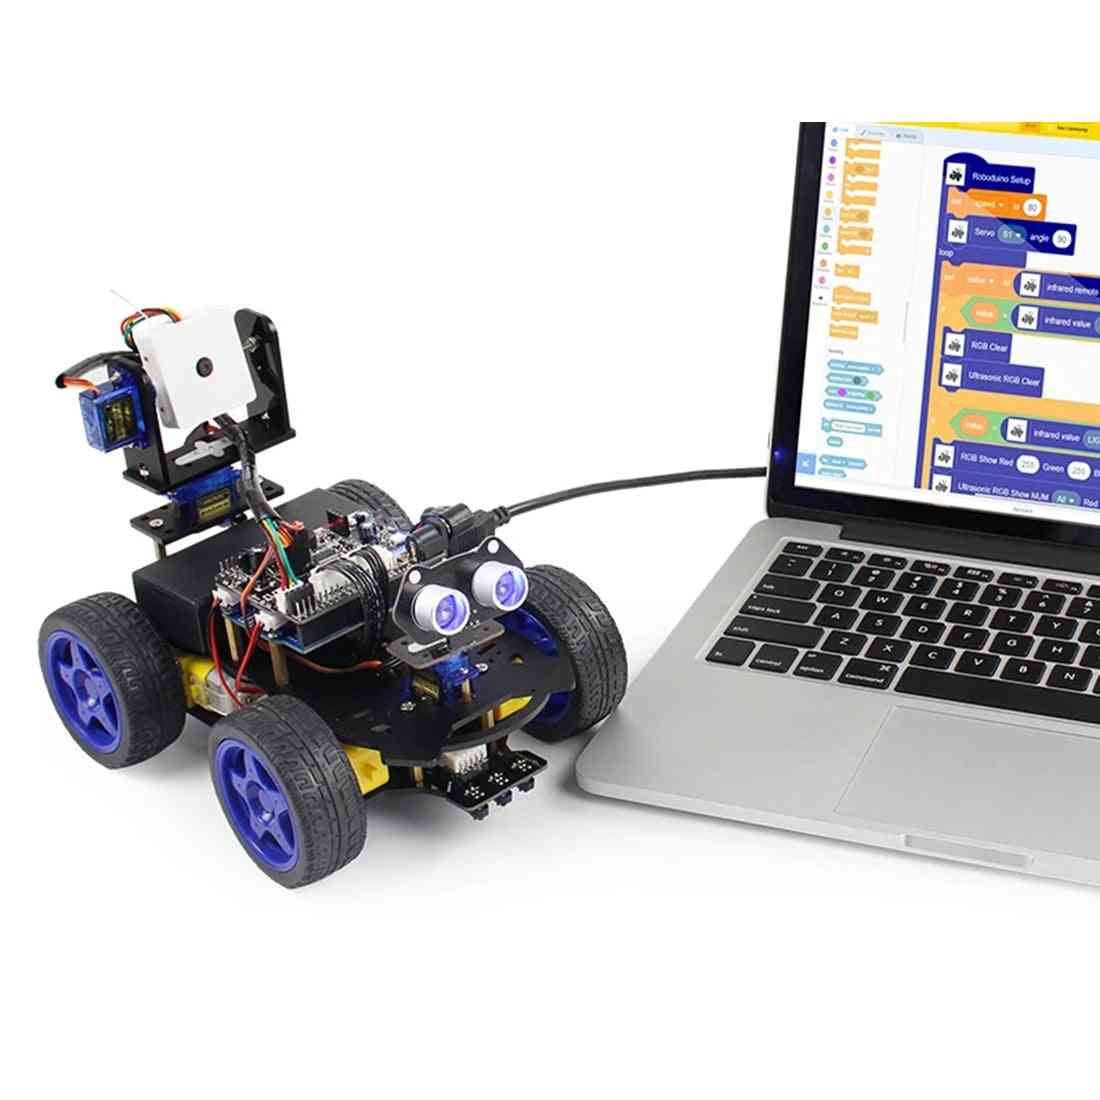 Luminiscenčni ultrazvočni modul, pameten avtomobil robot, wifi kamera, komplet gimbala za arduino